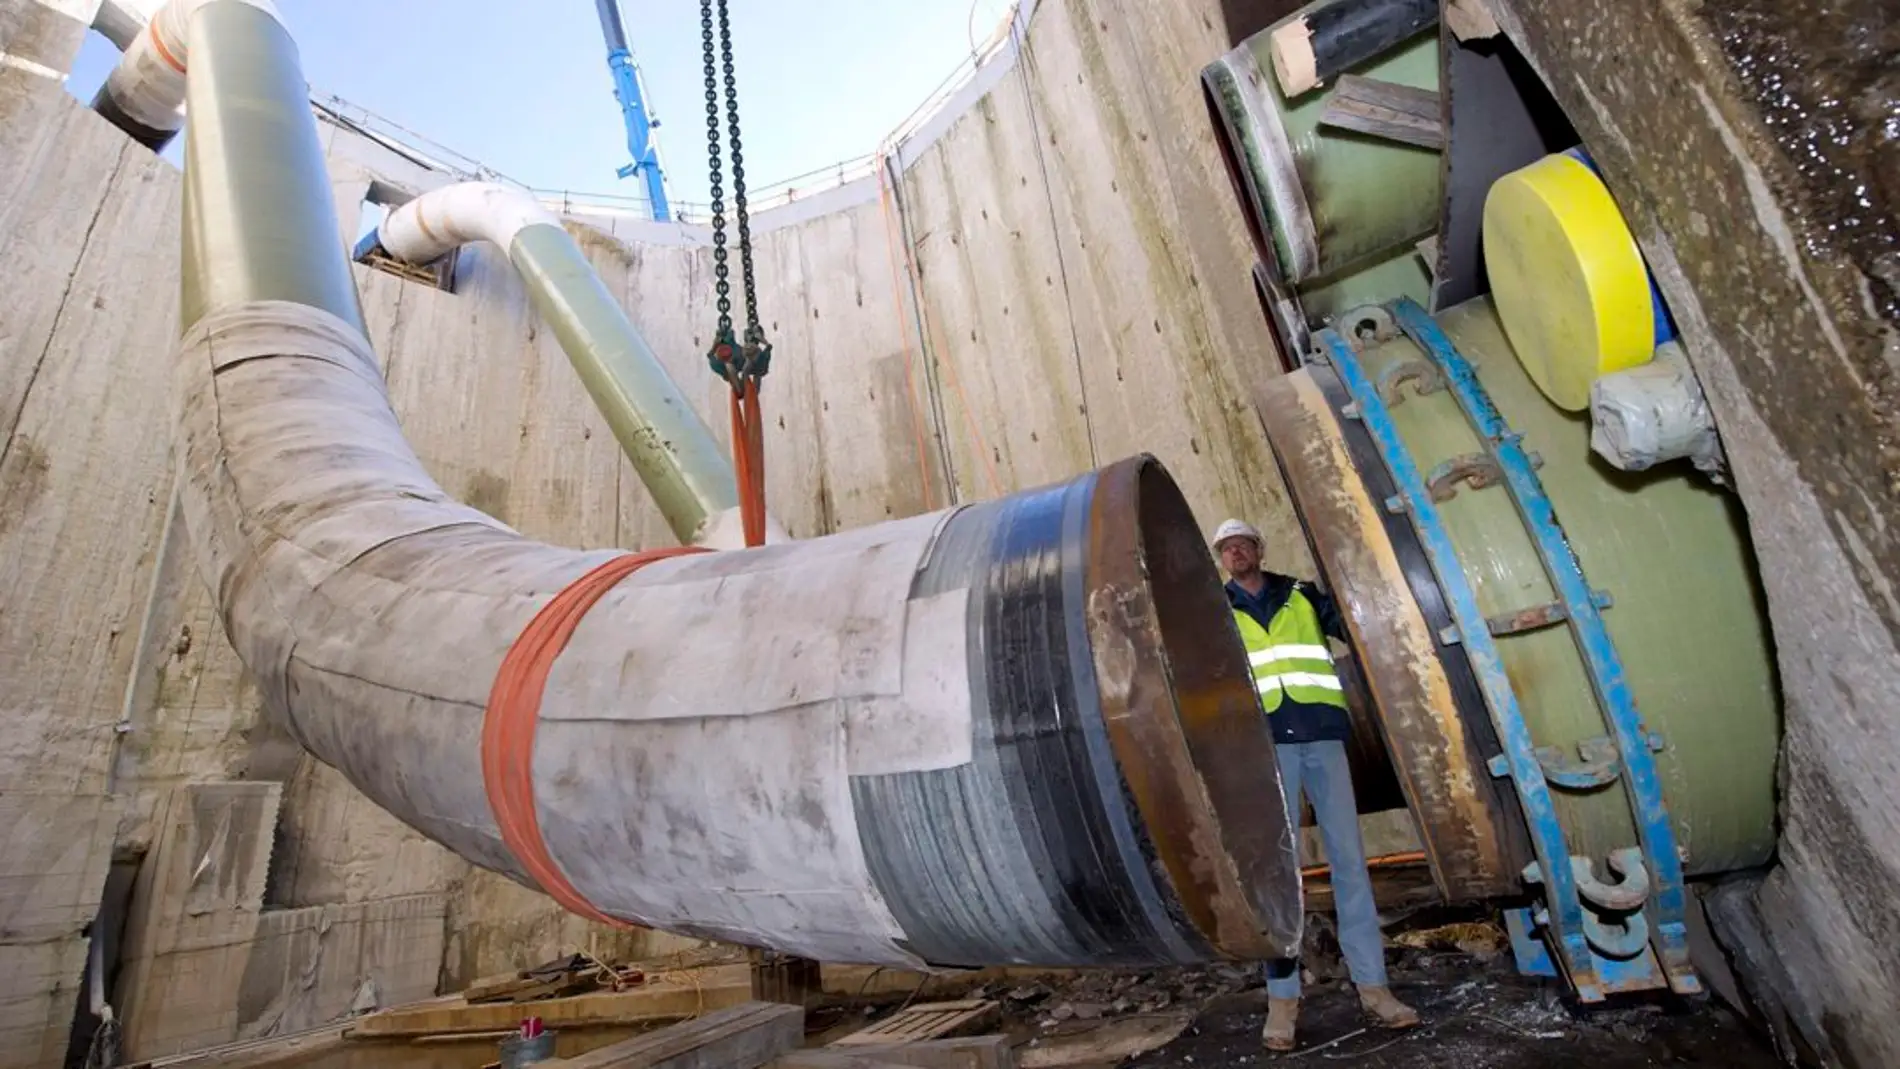 Qué es el Nord Stream: el gasoducto que une Rusia y Europa saboteado 